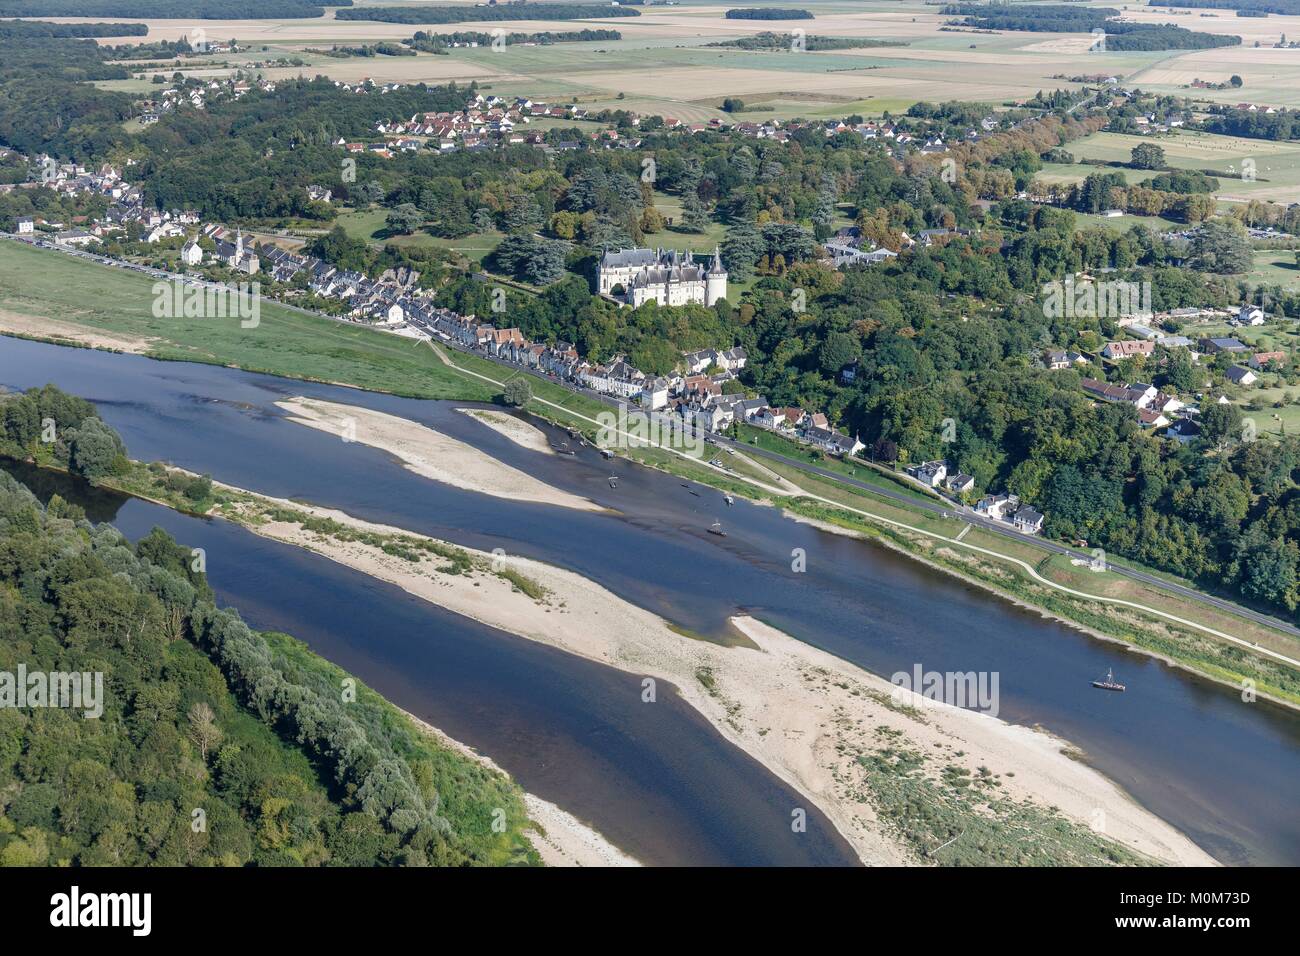 Francia, Loir et Cher,Valle del Loira catalogado como Patrimonio de la Humanidad por la UNESCO,Chaumont-sur-Loire, el castillo en el río Loira y la aldea (vista aérea) Foto de stock